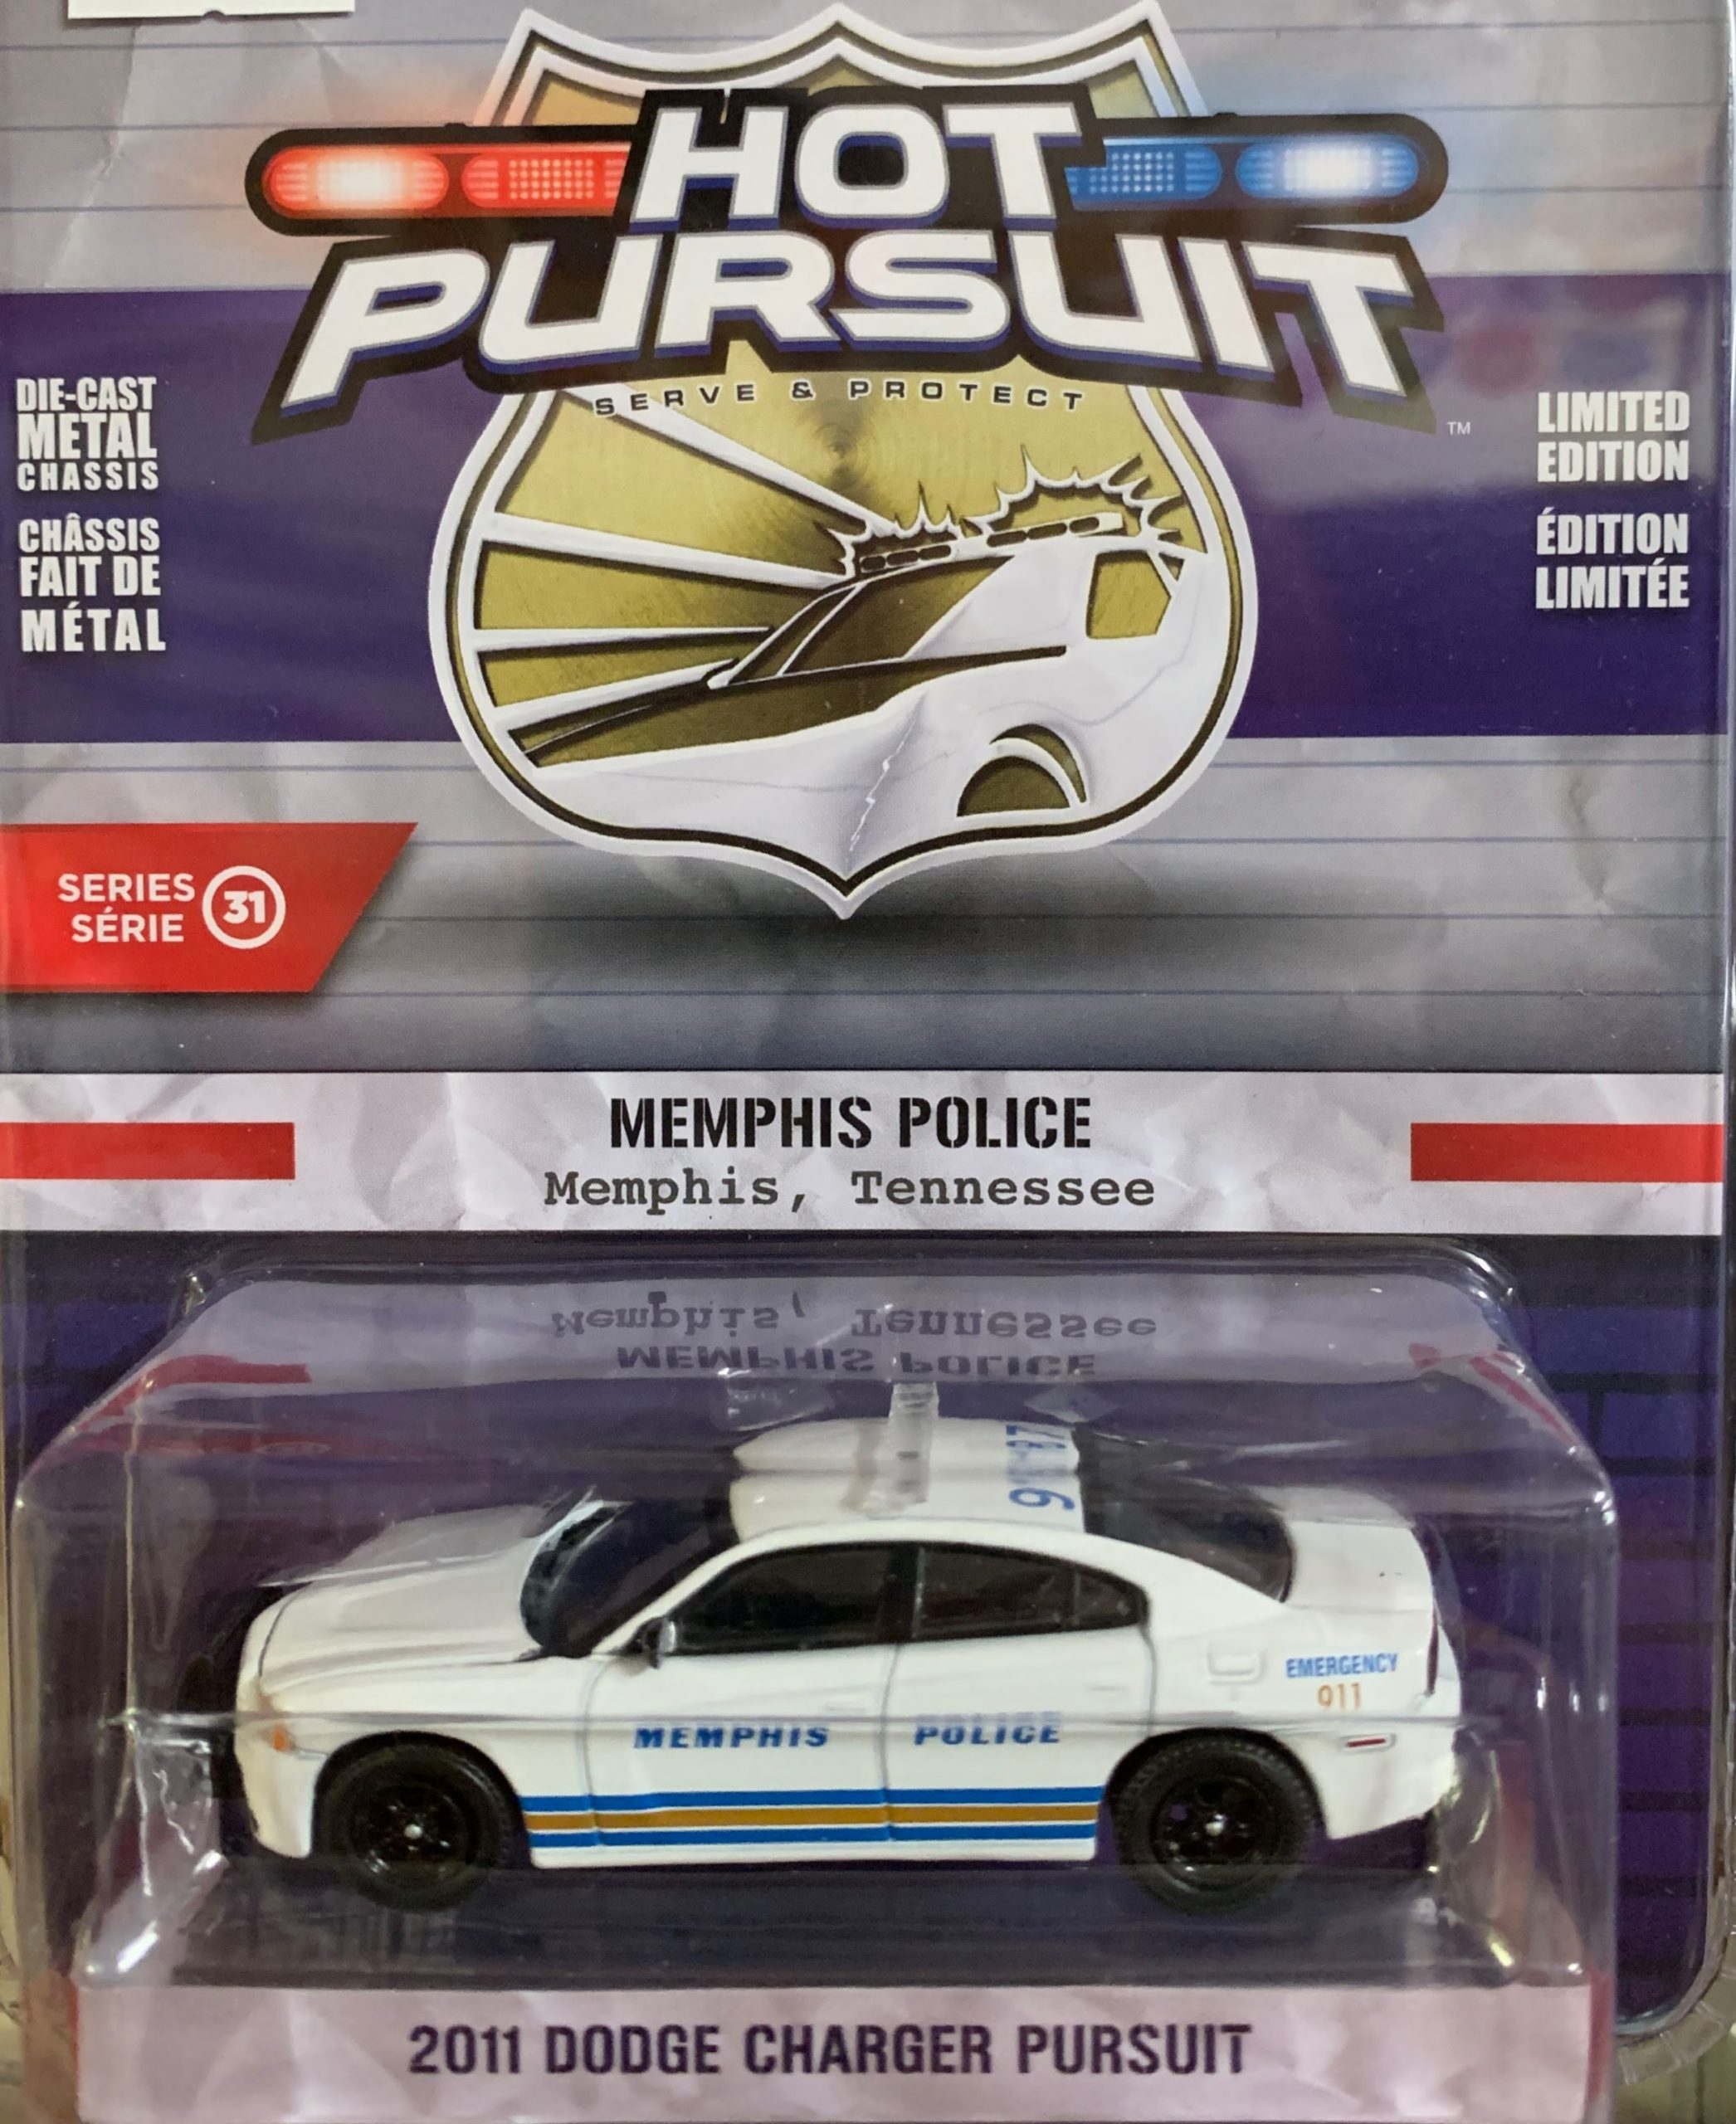 Dodge Charger Pursuit, 2011, Memphis Police